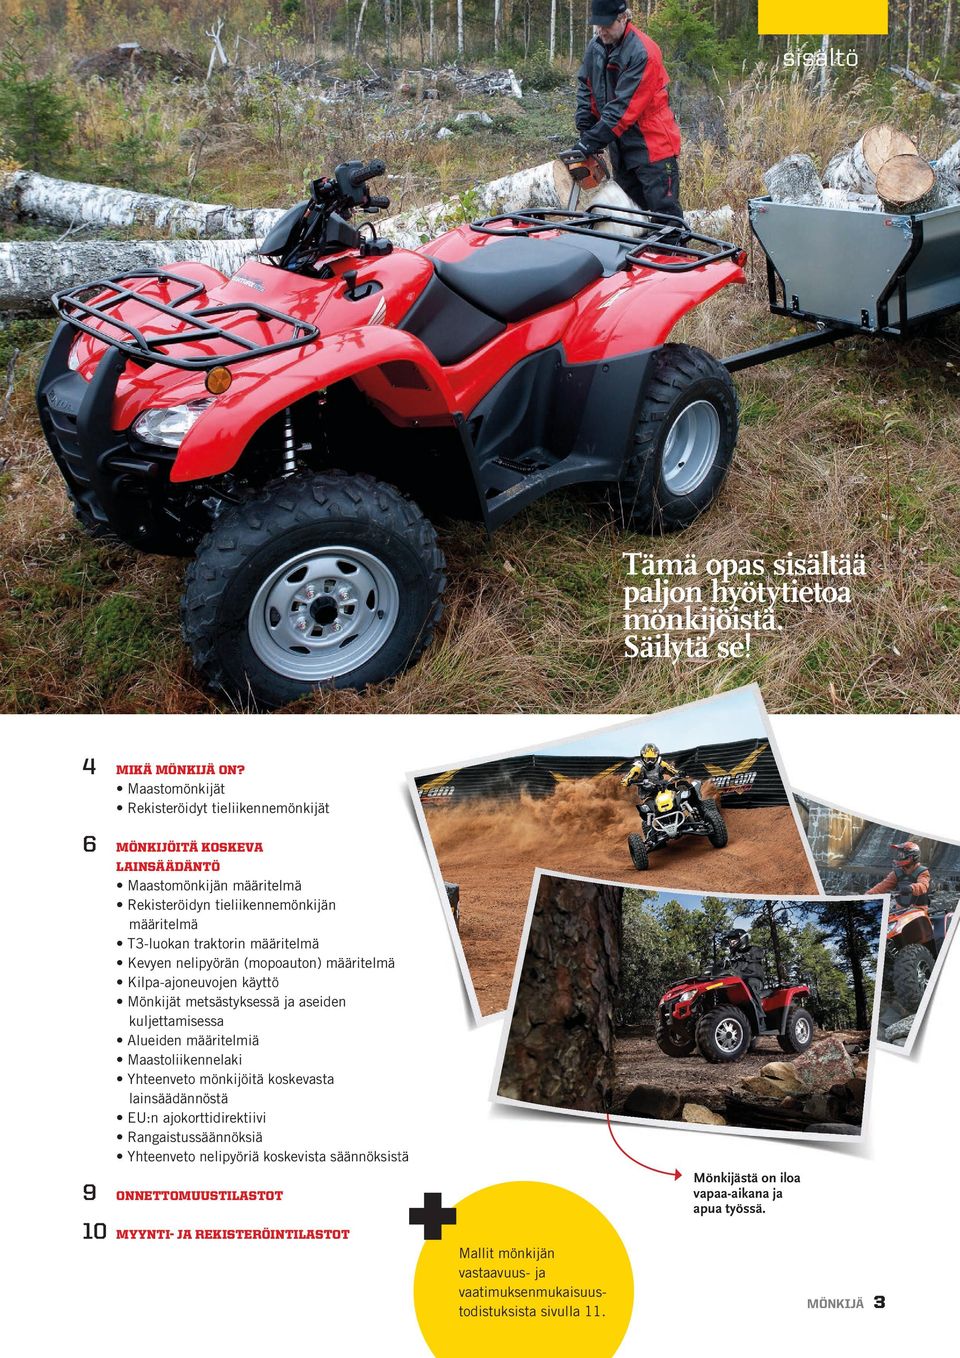 Kevyen nelipyörän (mopoauton) määritelmä Kilpa-ajoneuvojen käyttö Mönkijät metsästyksessä ja aseiden kuljettamisessa Alueiden määritelmiä Maastoliikennelaki Yhteenveto mönkijöitä